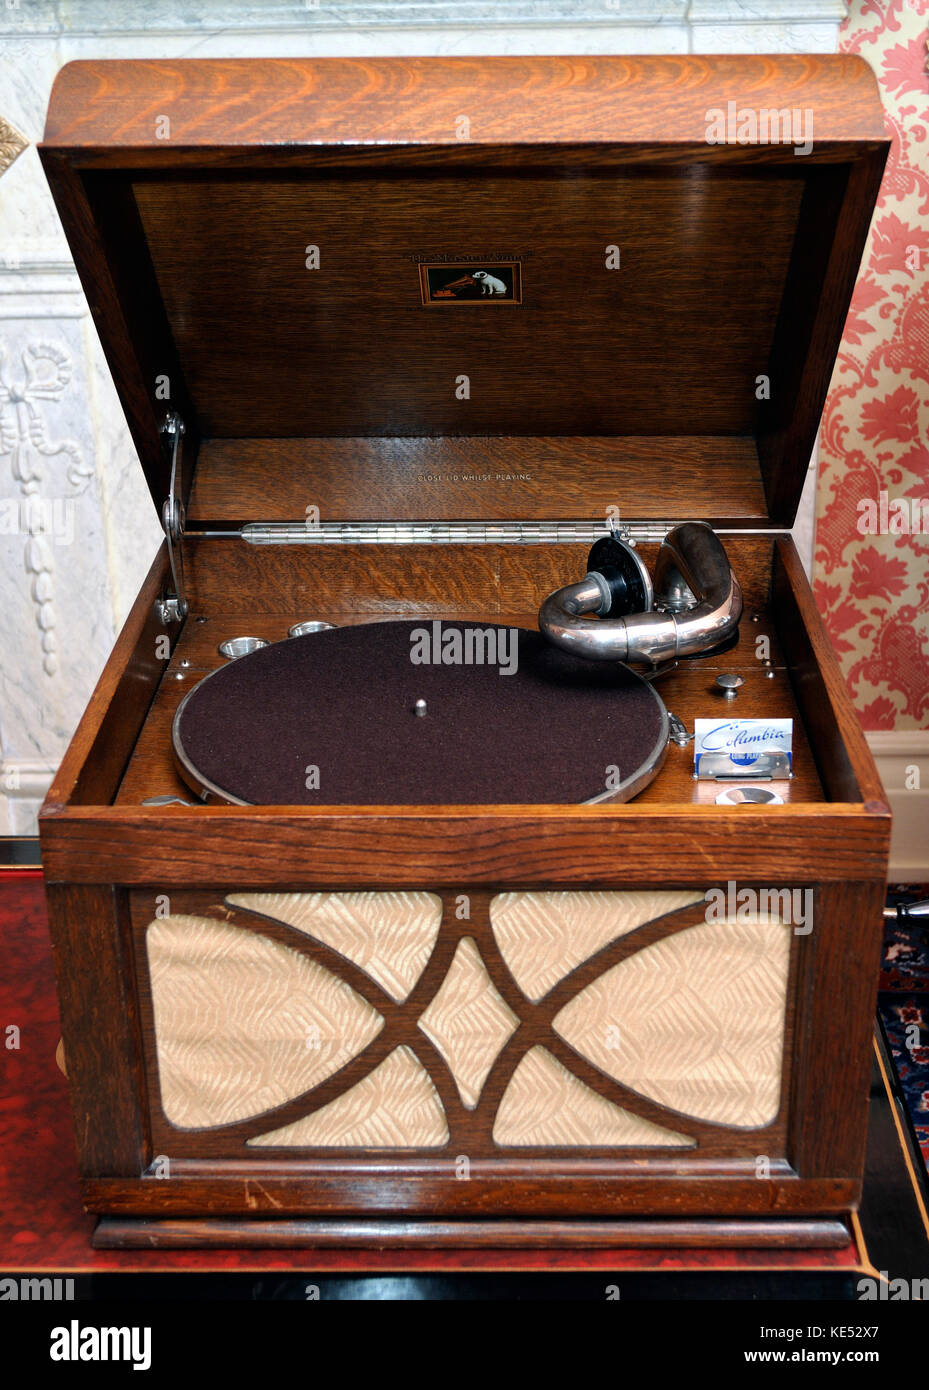 Grammofono portatile dal 1940s. HMV modello 102. Fabbricato 1931 - 1958. Sound box sulla parte anteriore del grammofono. Giradischi con Parlophone record. Ha suonato con il coperchio aperto. Foto Stock